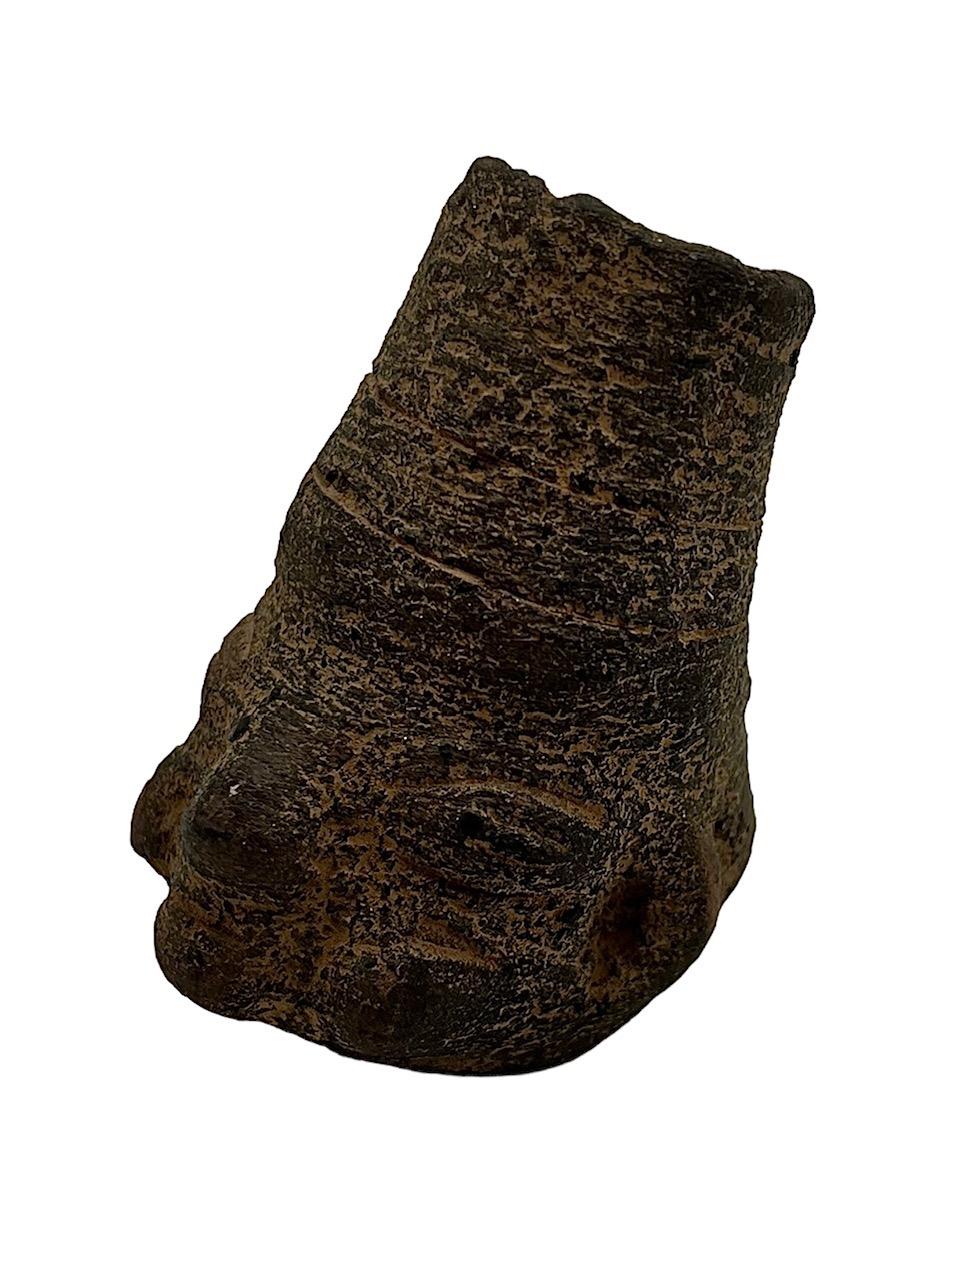 Primitive Kopffigur aus Stein aus der präkolumbianischen Periode 5